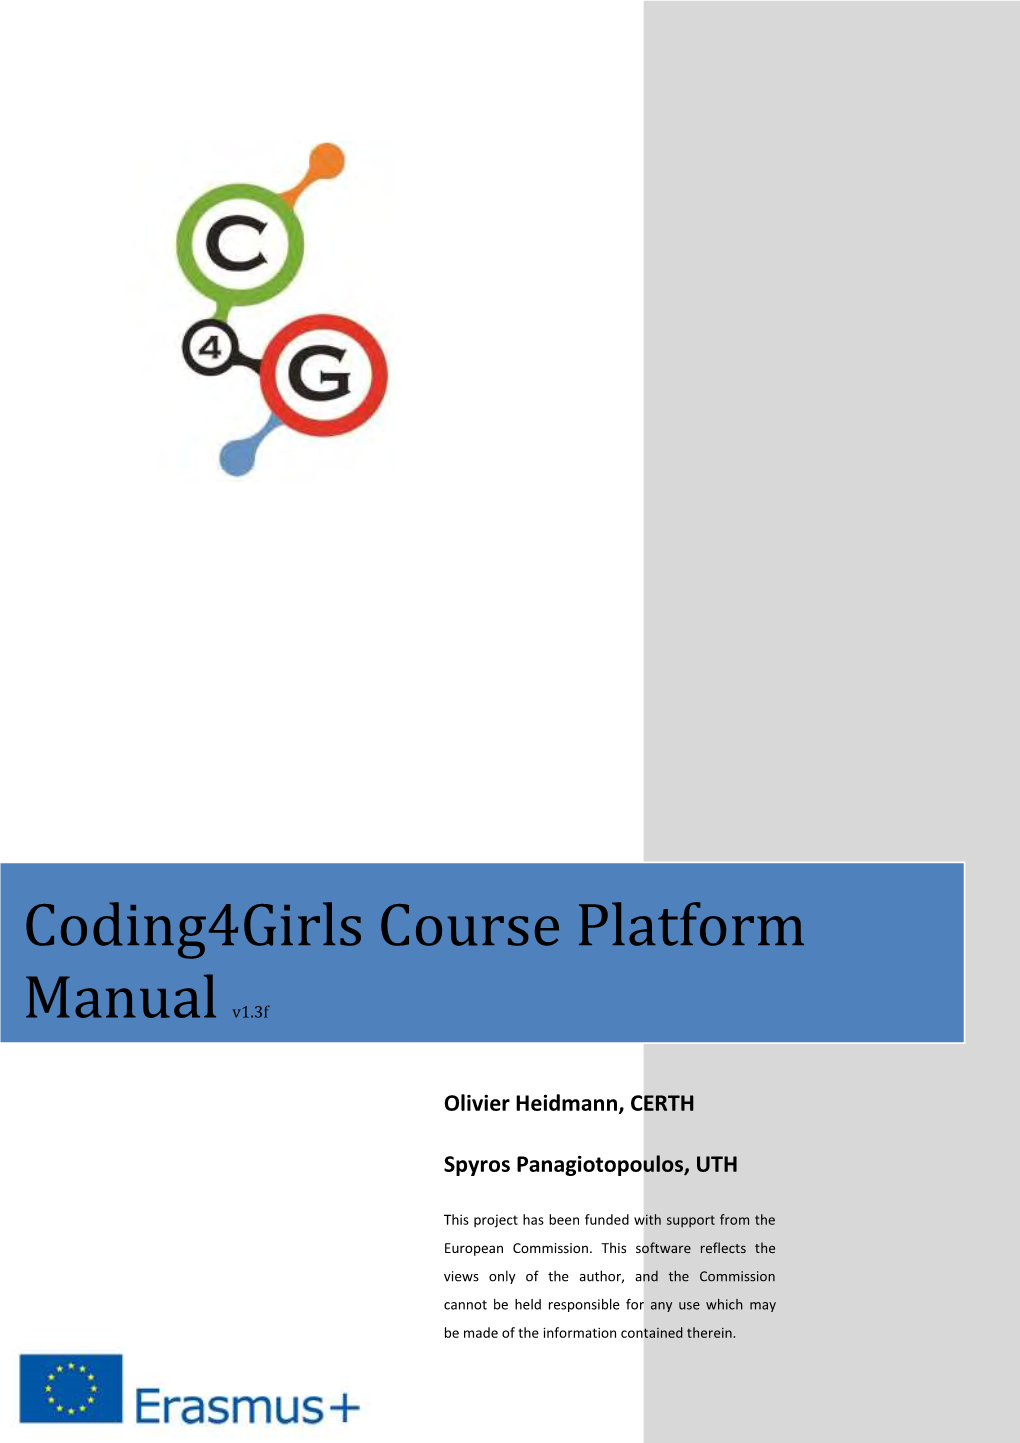 Coding4girls Course Platform Manual V1.3F